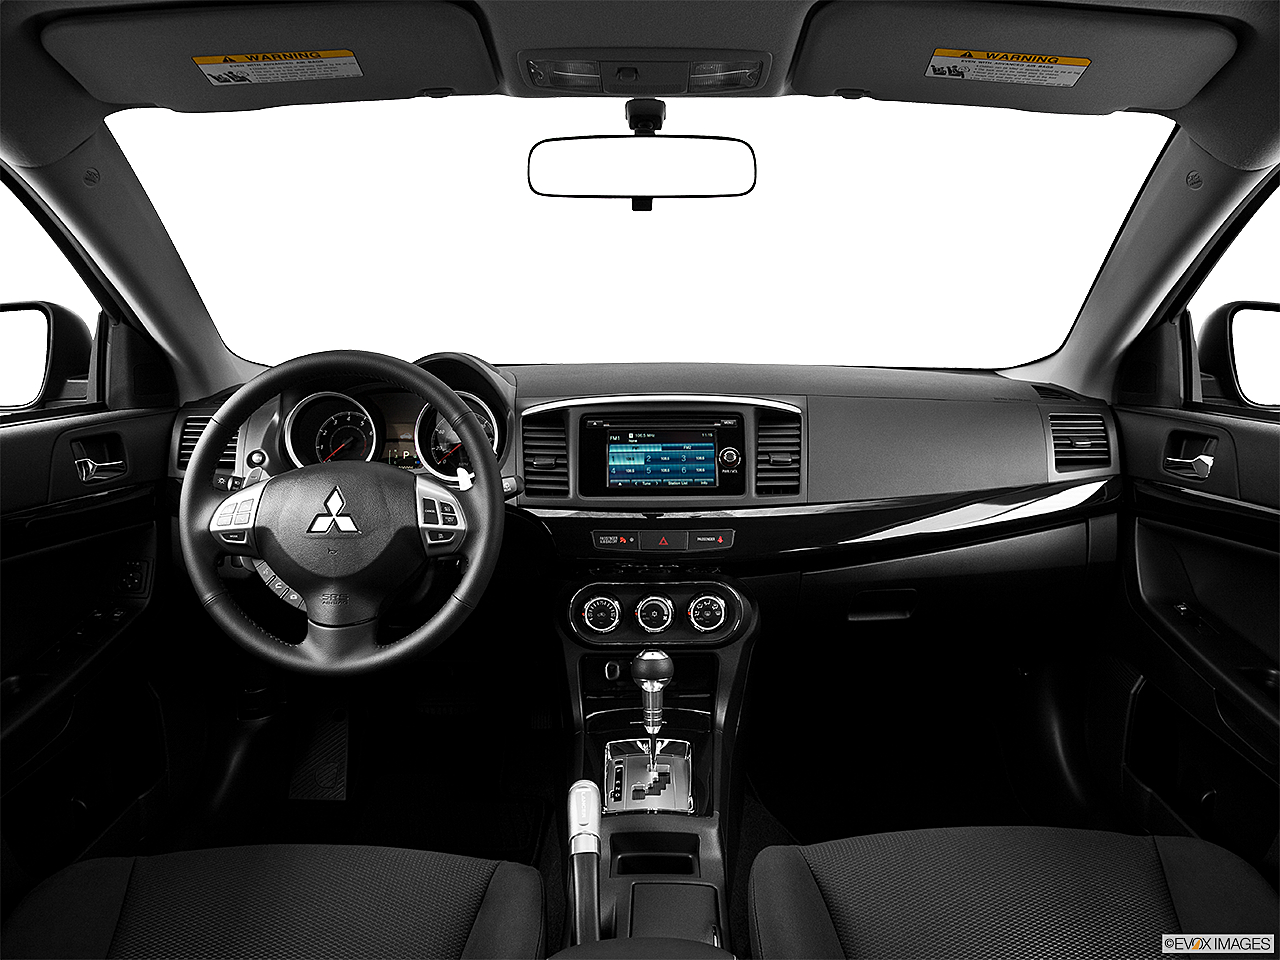 2014 Mitsubishi Lancer Sportback ES 4dr Hatchback - Research - GrooveCar